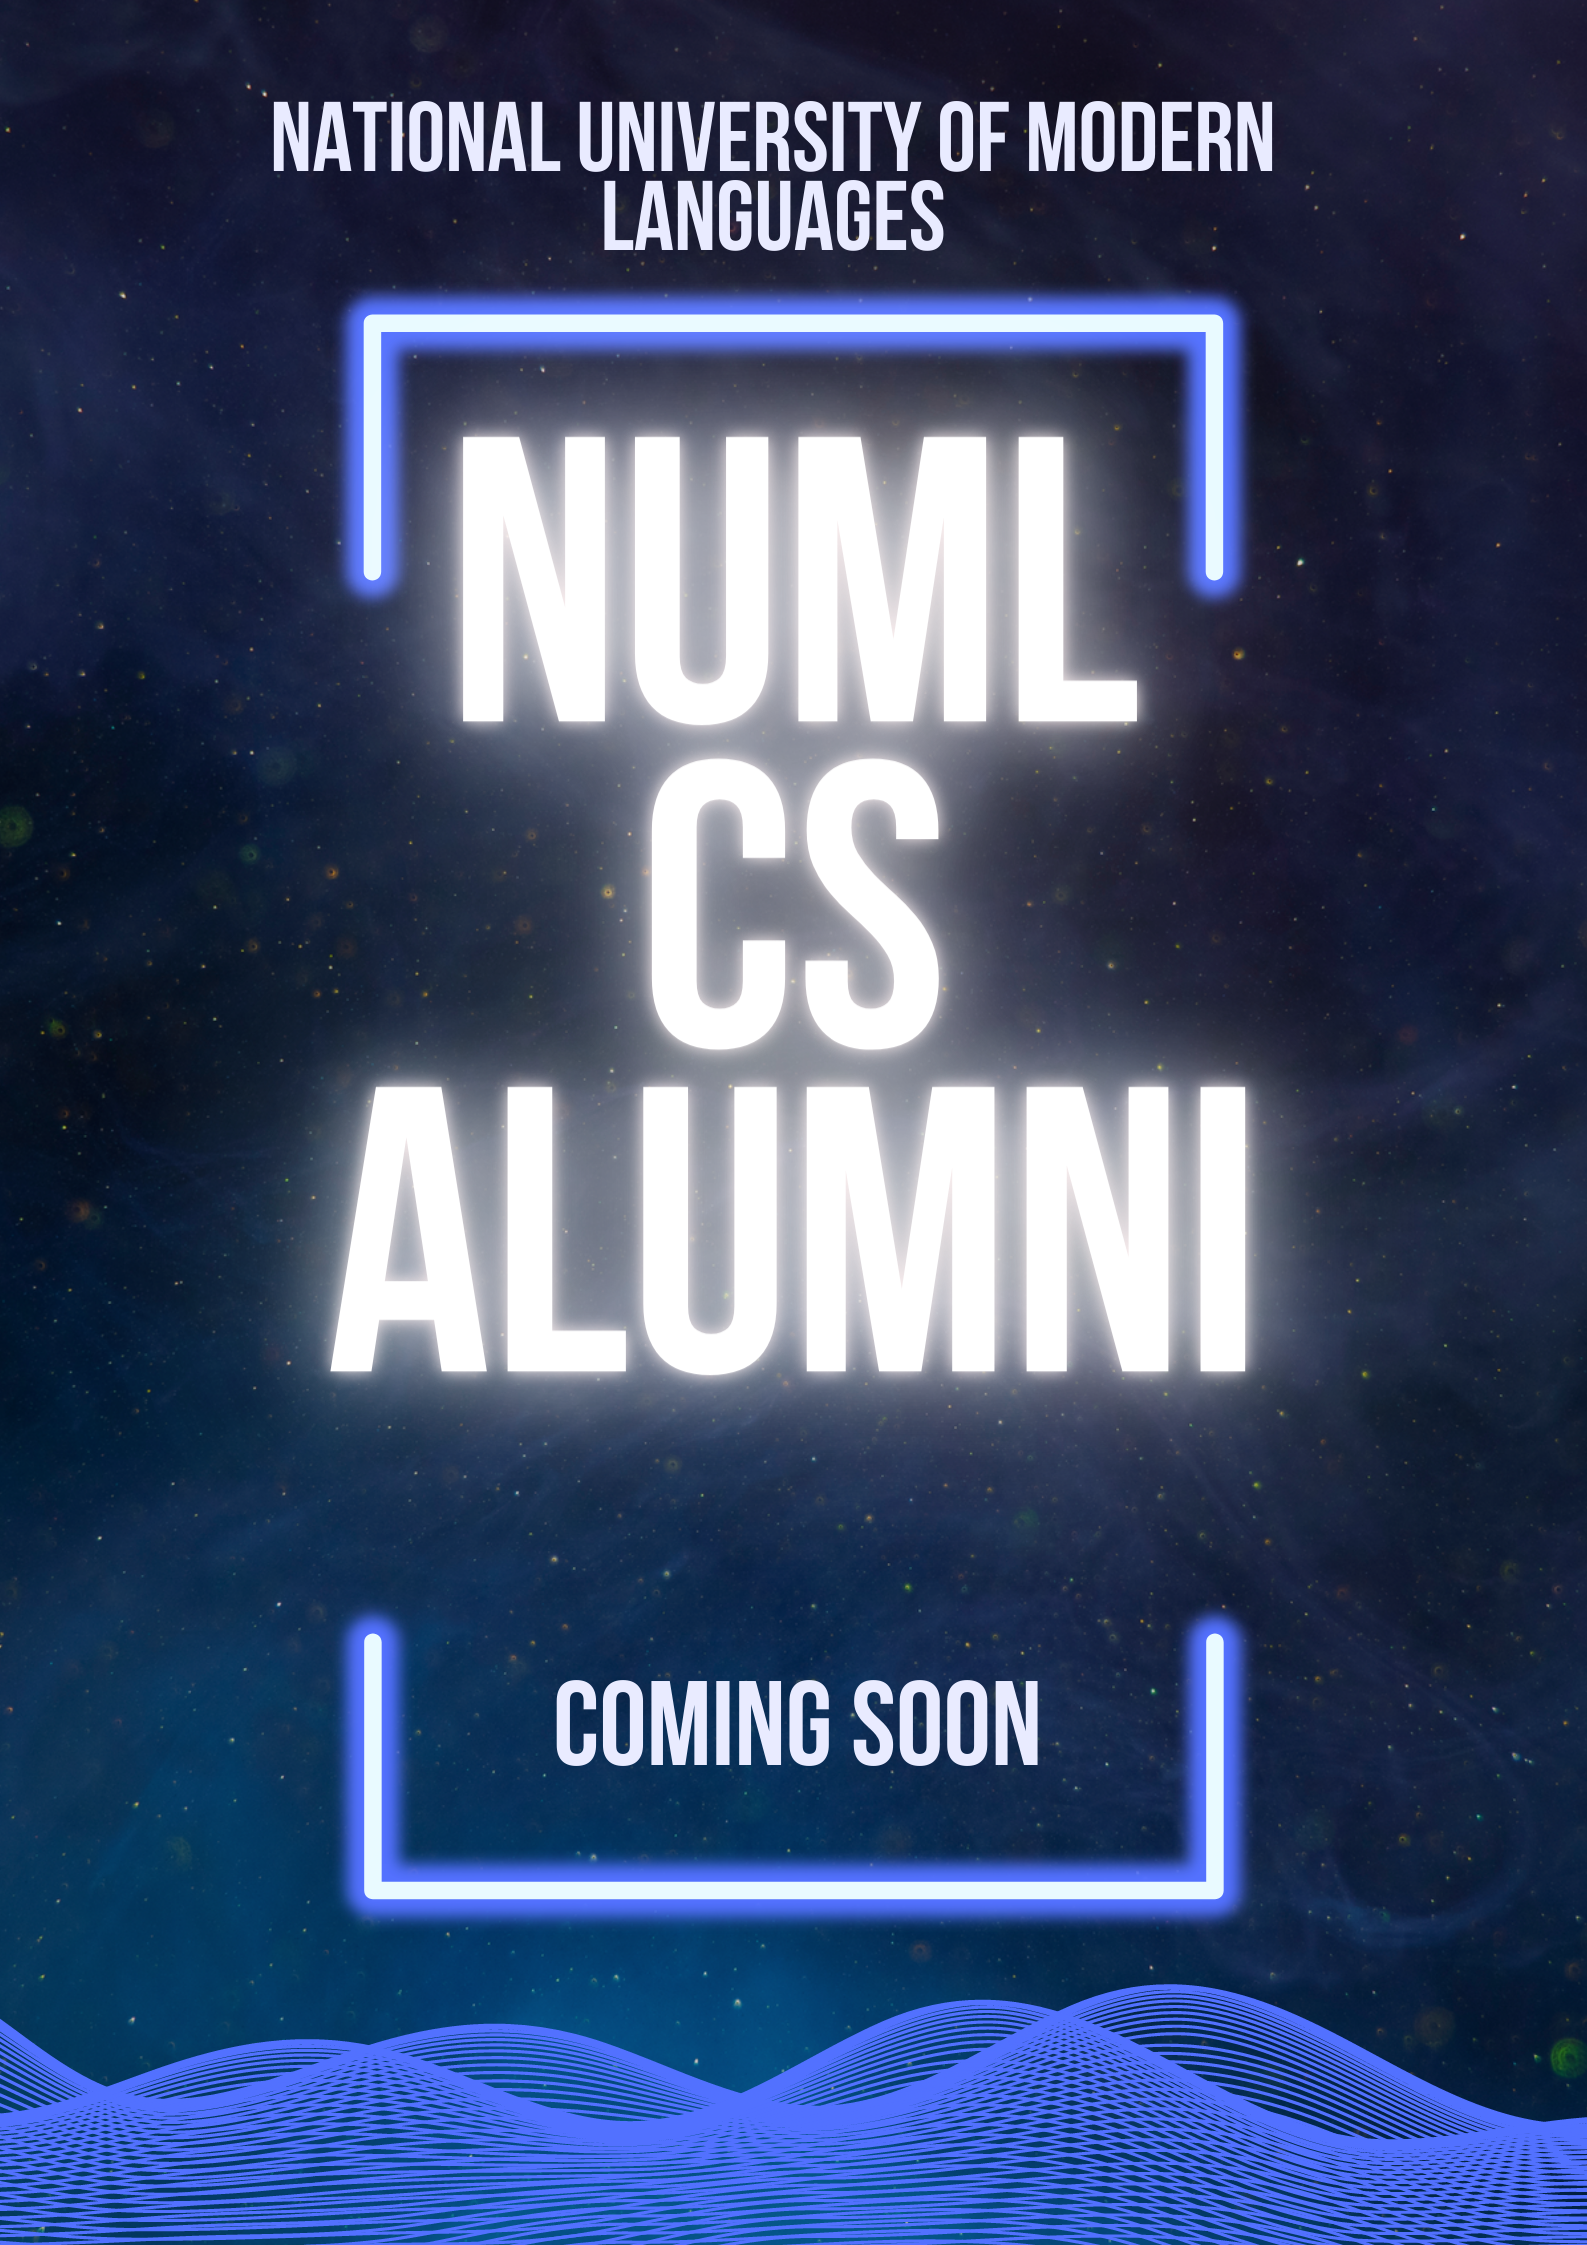 NUML-CS-ALUMNI'S - Coming Soon